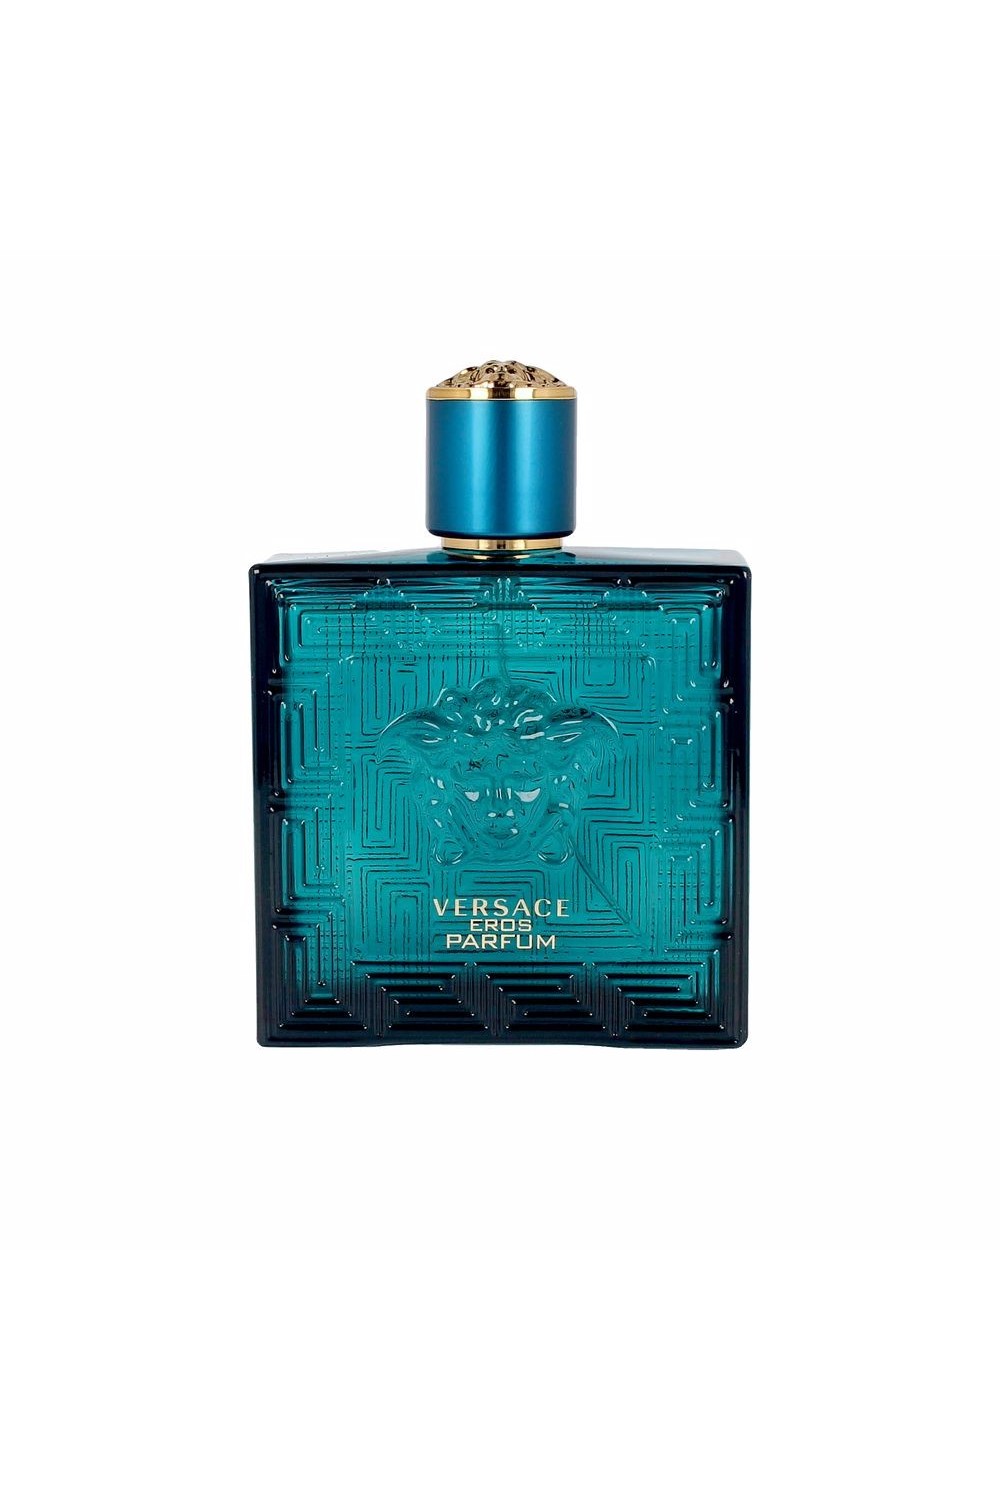 Versace Eros Perfume Spray 100ml